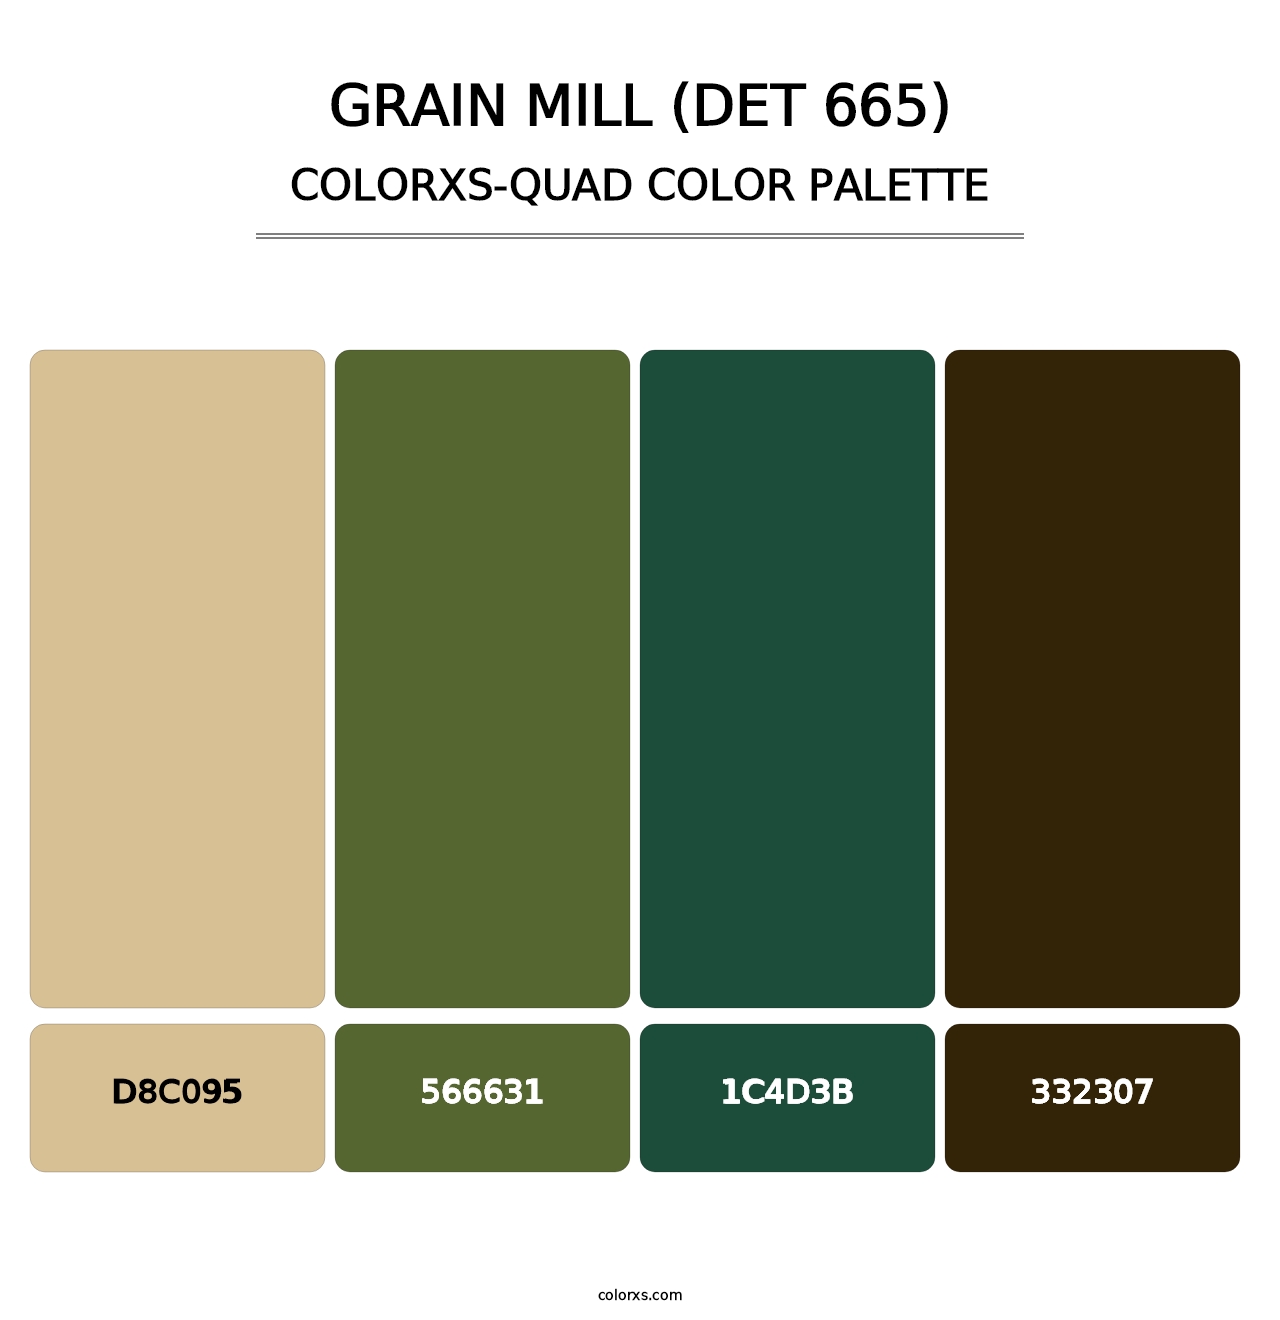 Grain Mill (DET 665) - Colorxs Quad Palette